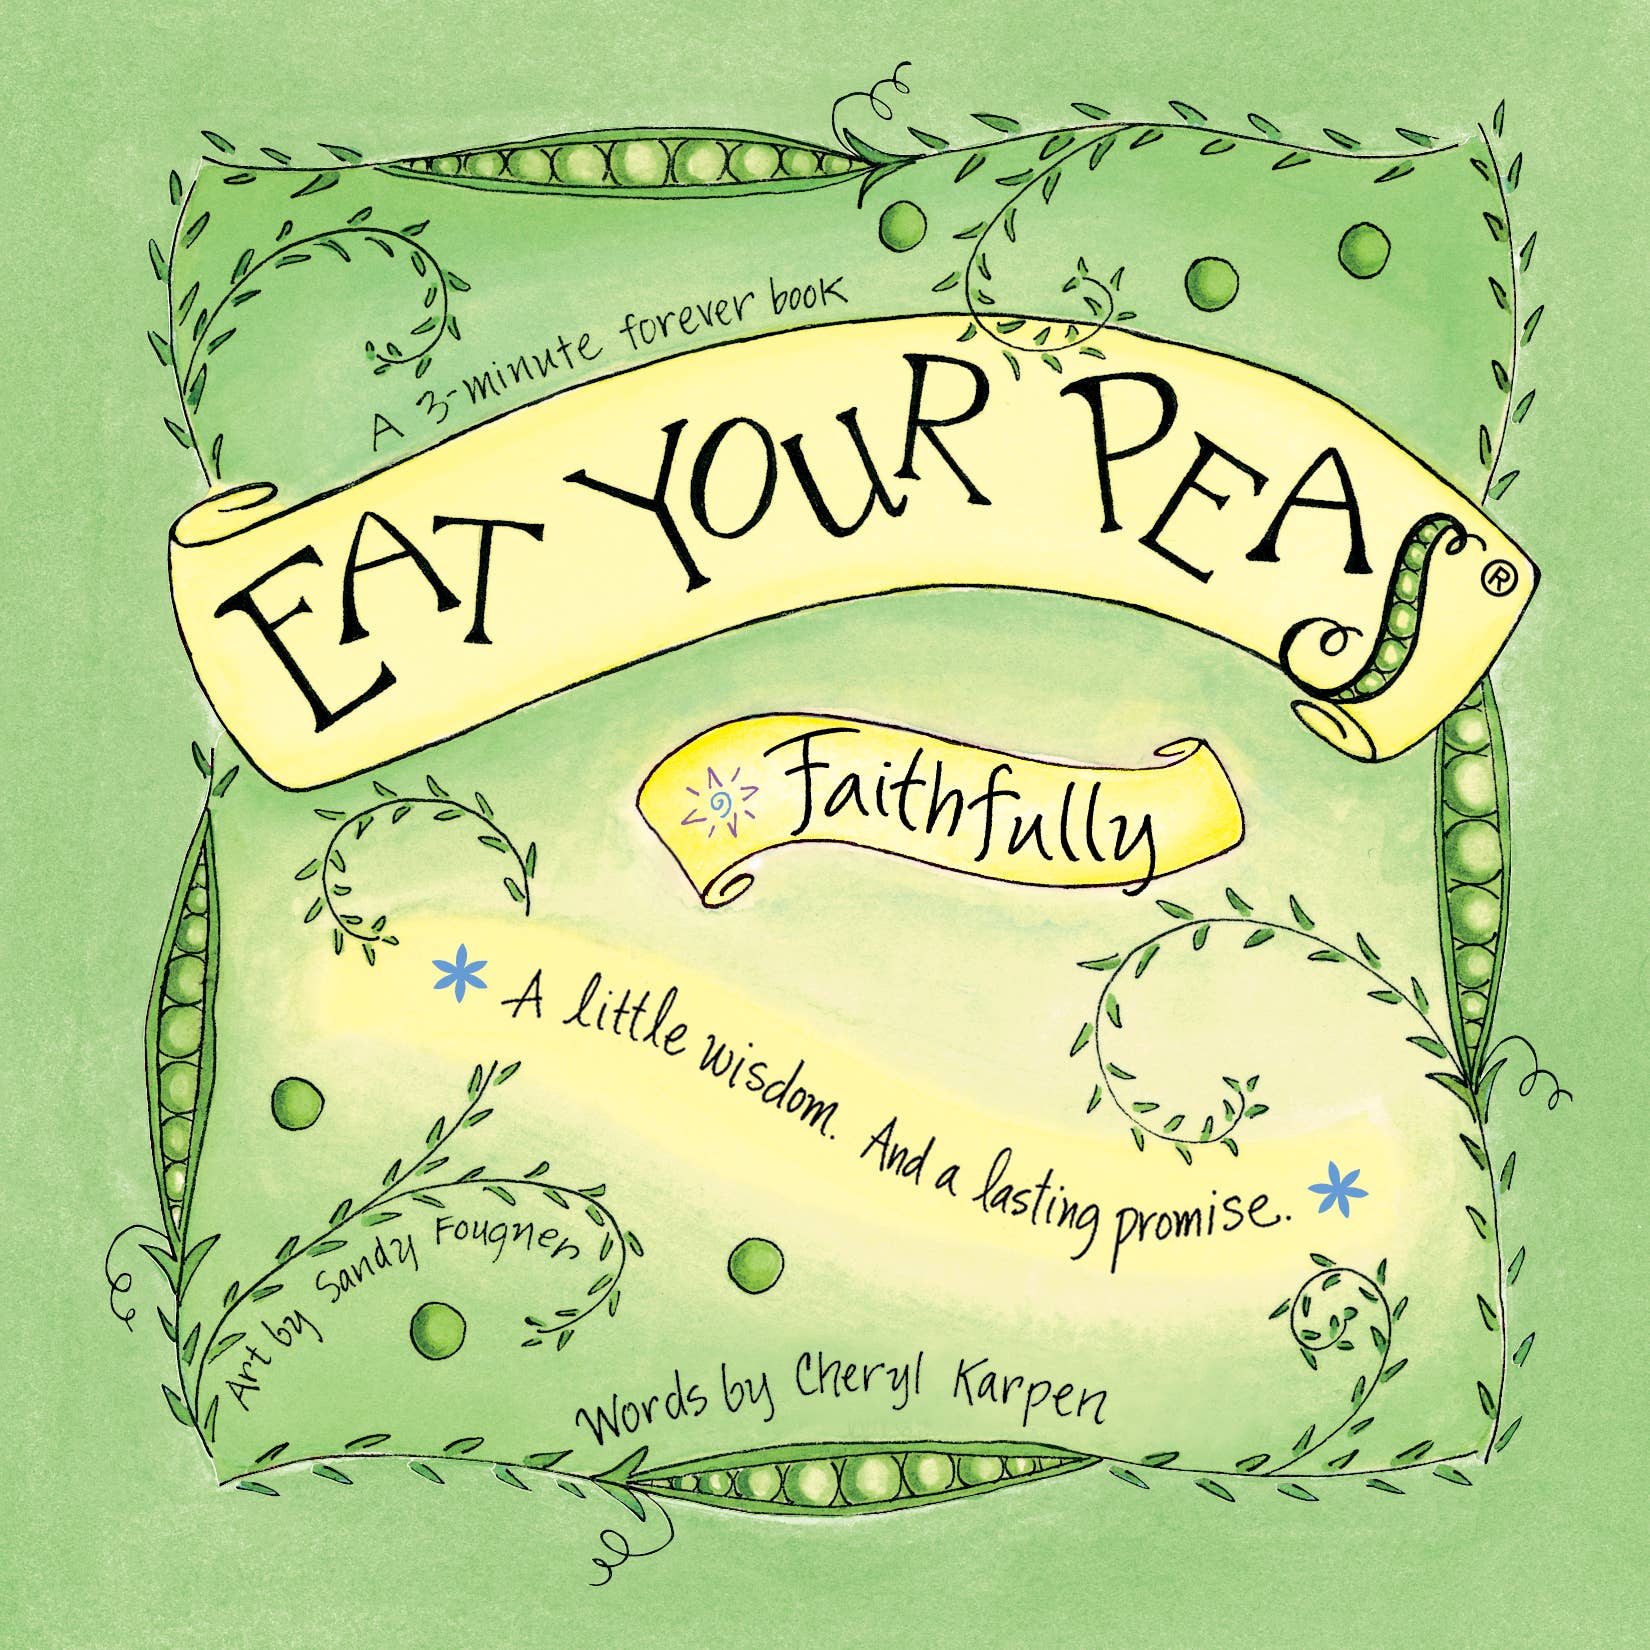 Faithfully Eat Your Peas